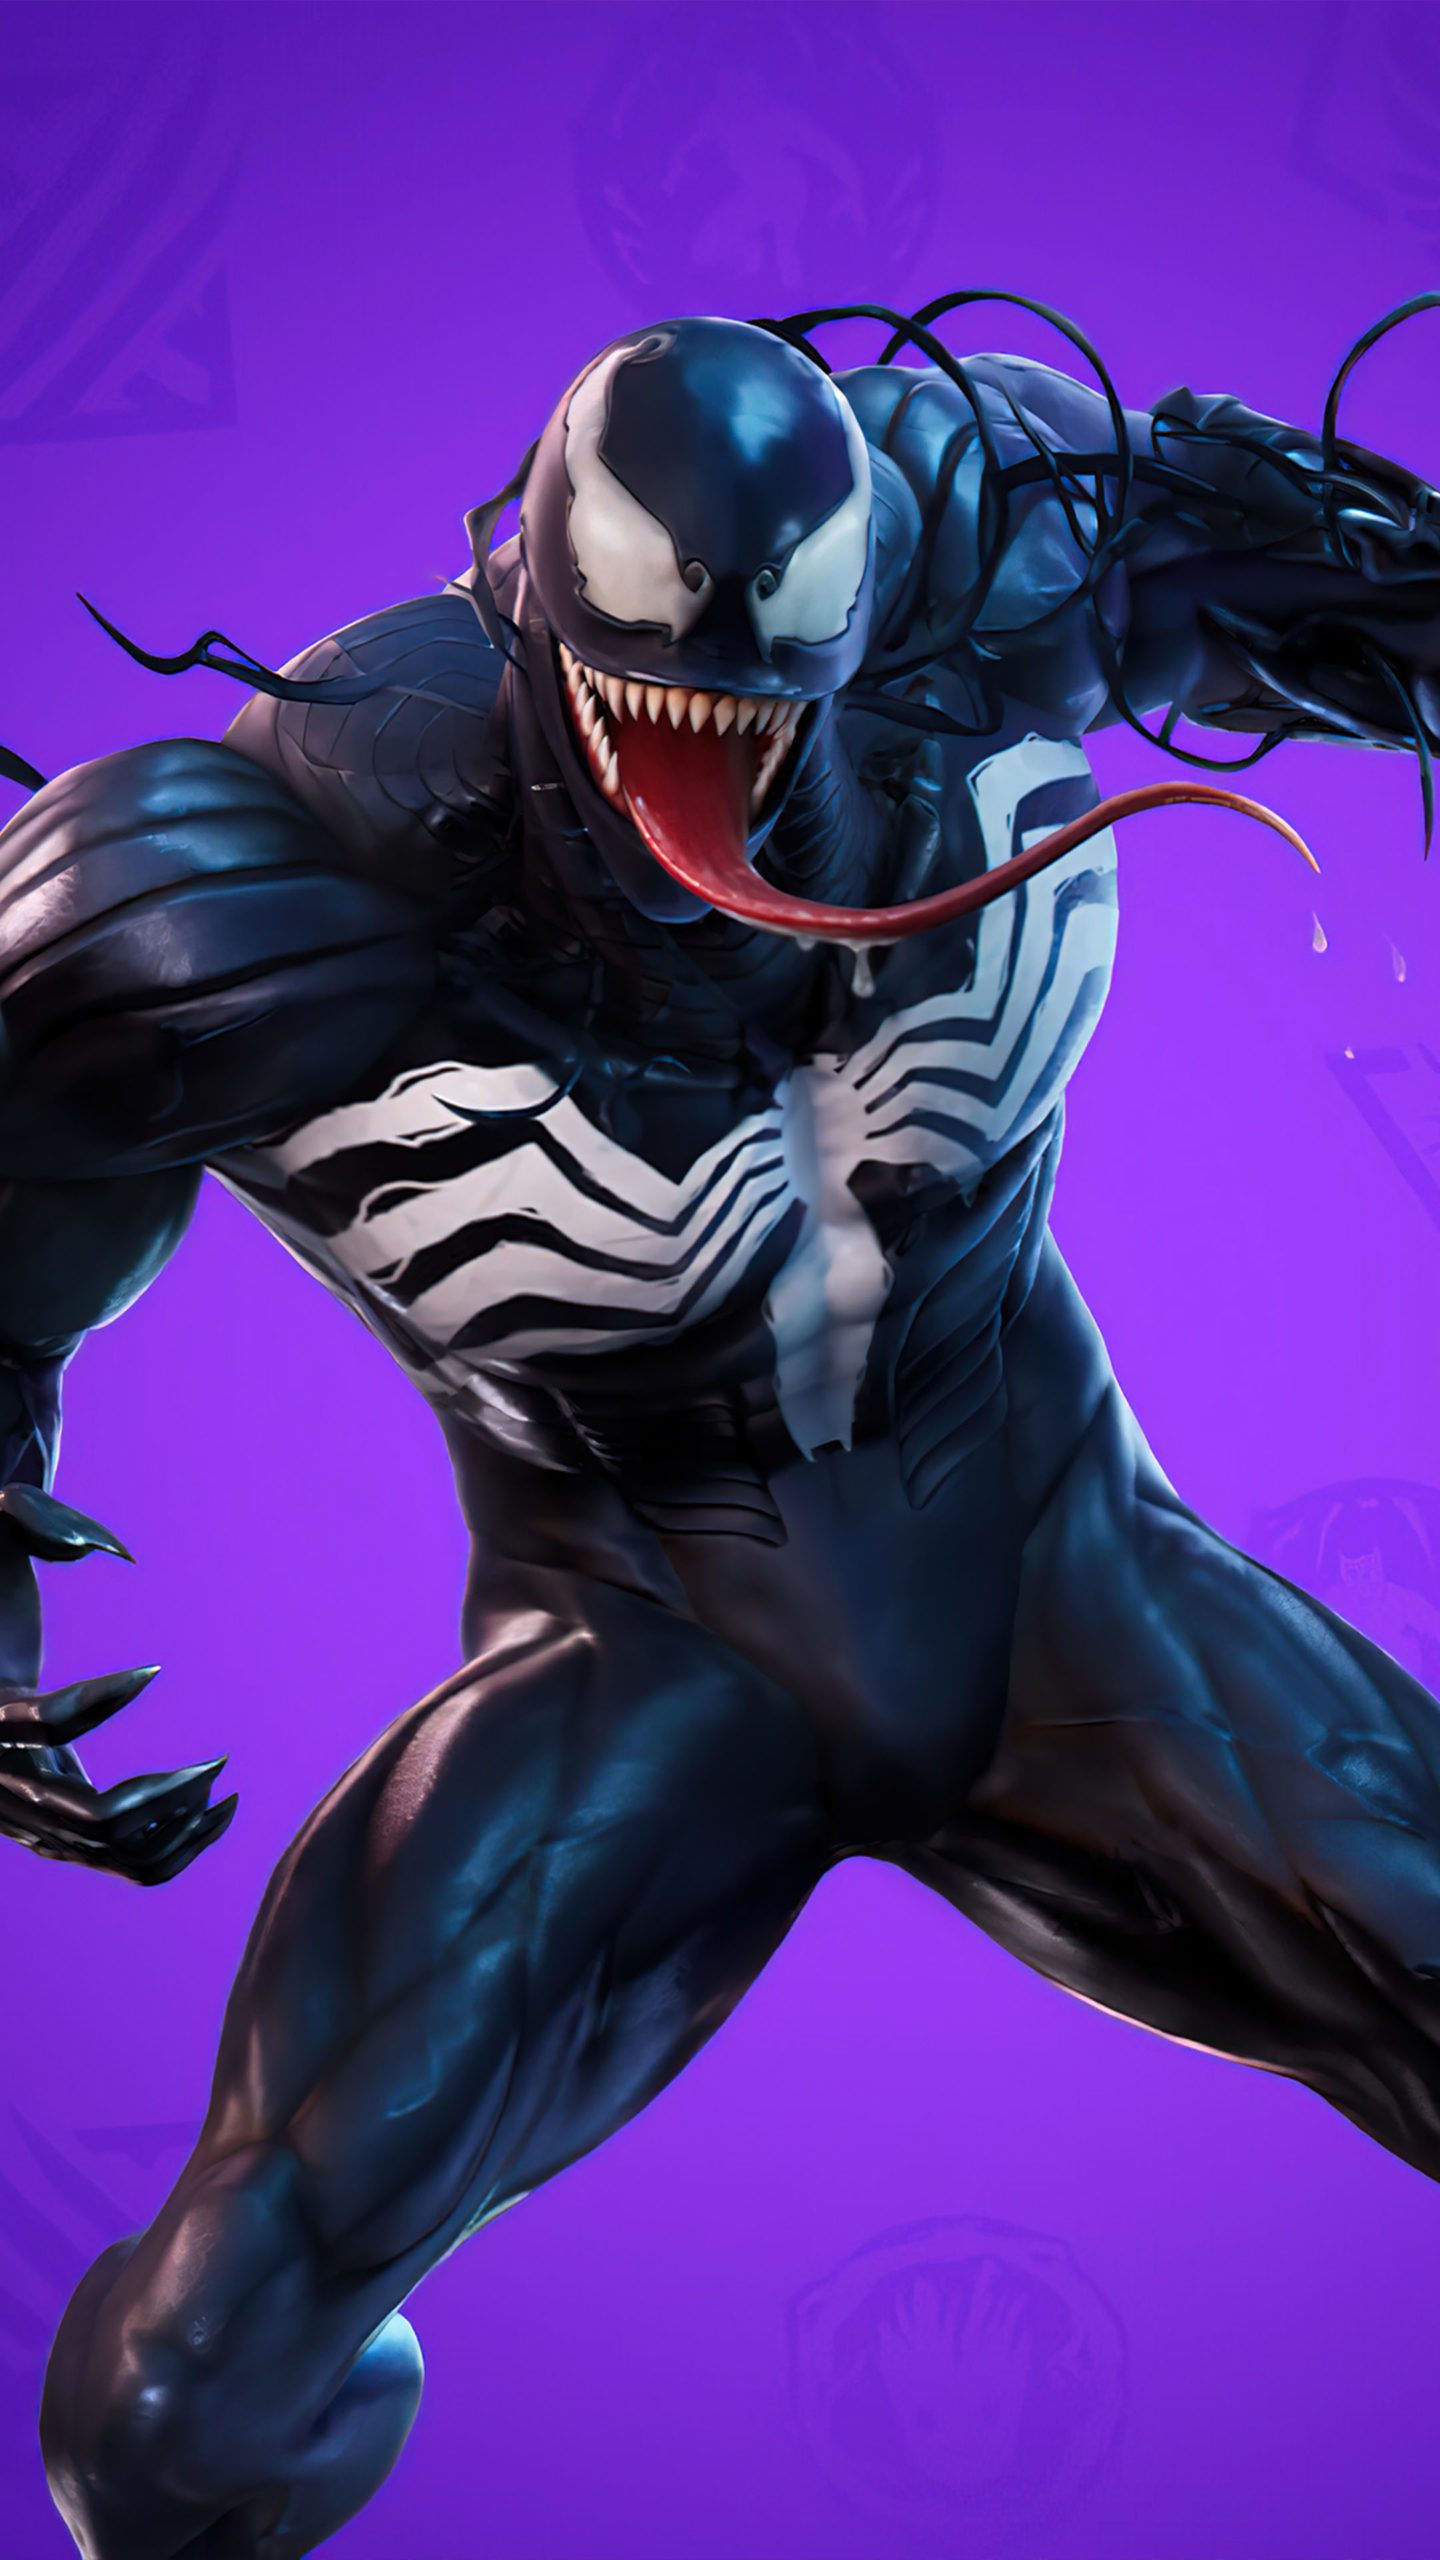 Venom Art 4K iPhone Wallpaper - iPhone Wallpapers